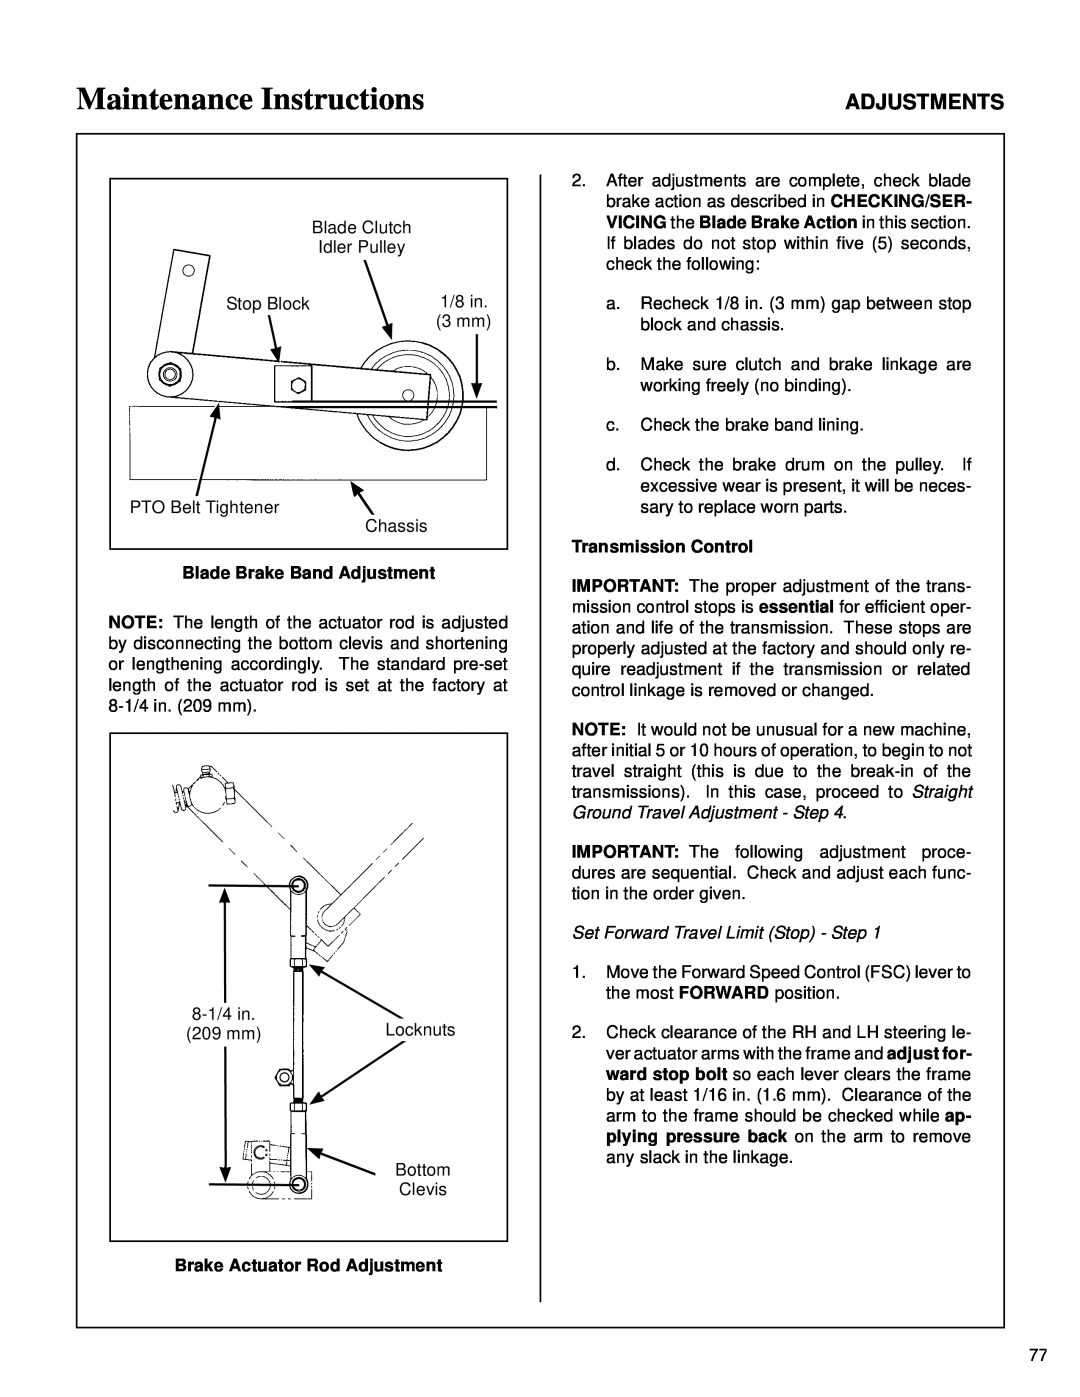 Walker MT owner manual Maintenance Instructions, Adjustments, Blade Brake Band Adjustment, Brake Actuator Rod Adjustment 